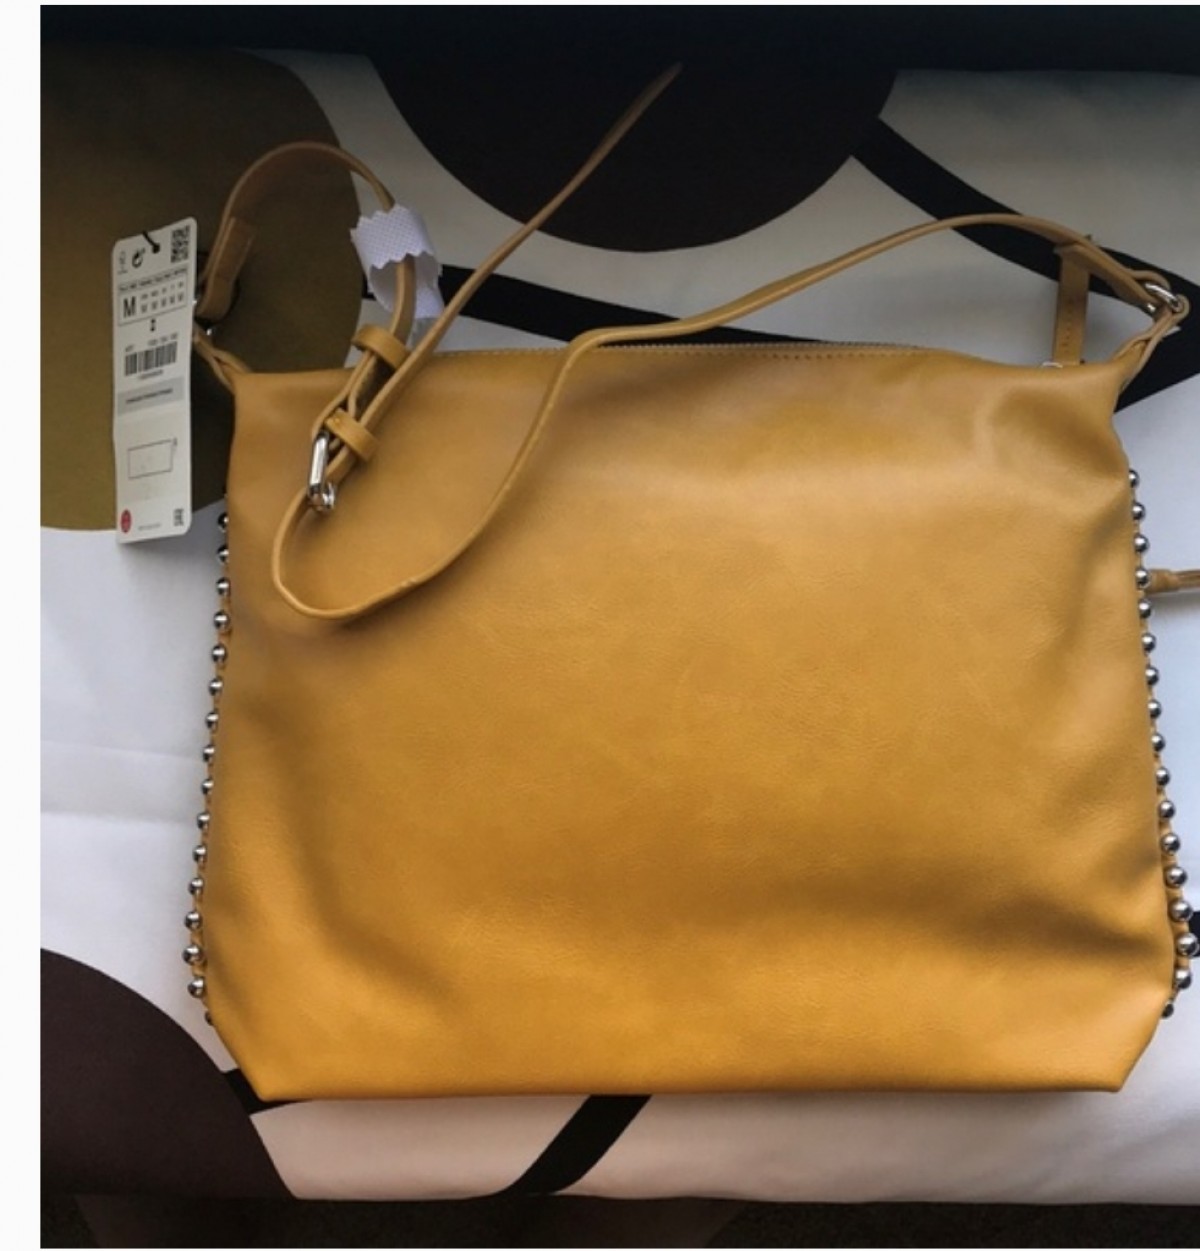 NEW ZARA HANDBAG for sale in MANDEVILLE Manchester - Handbags & Purses